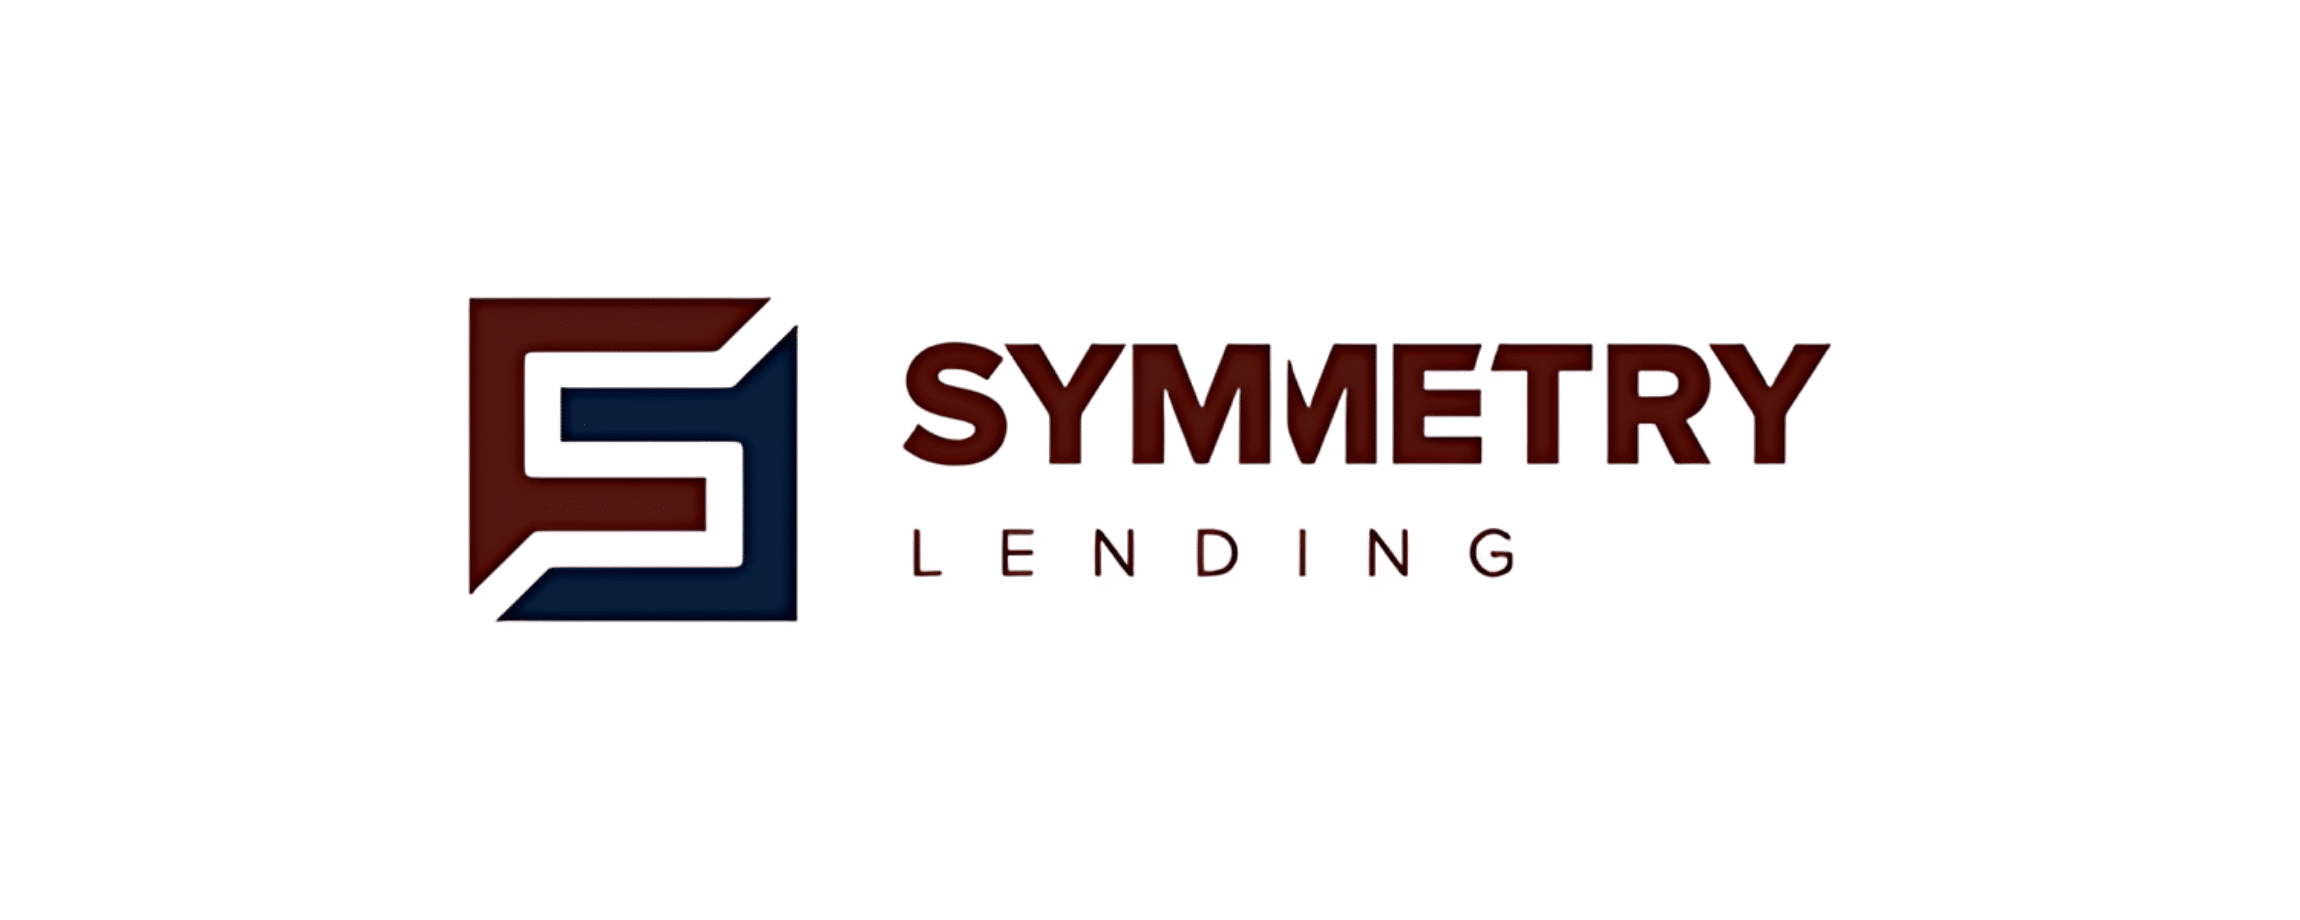 Symmetry Lending